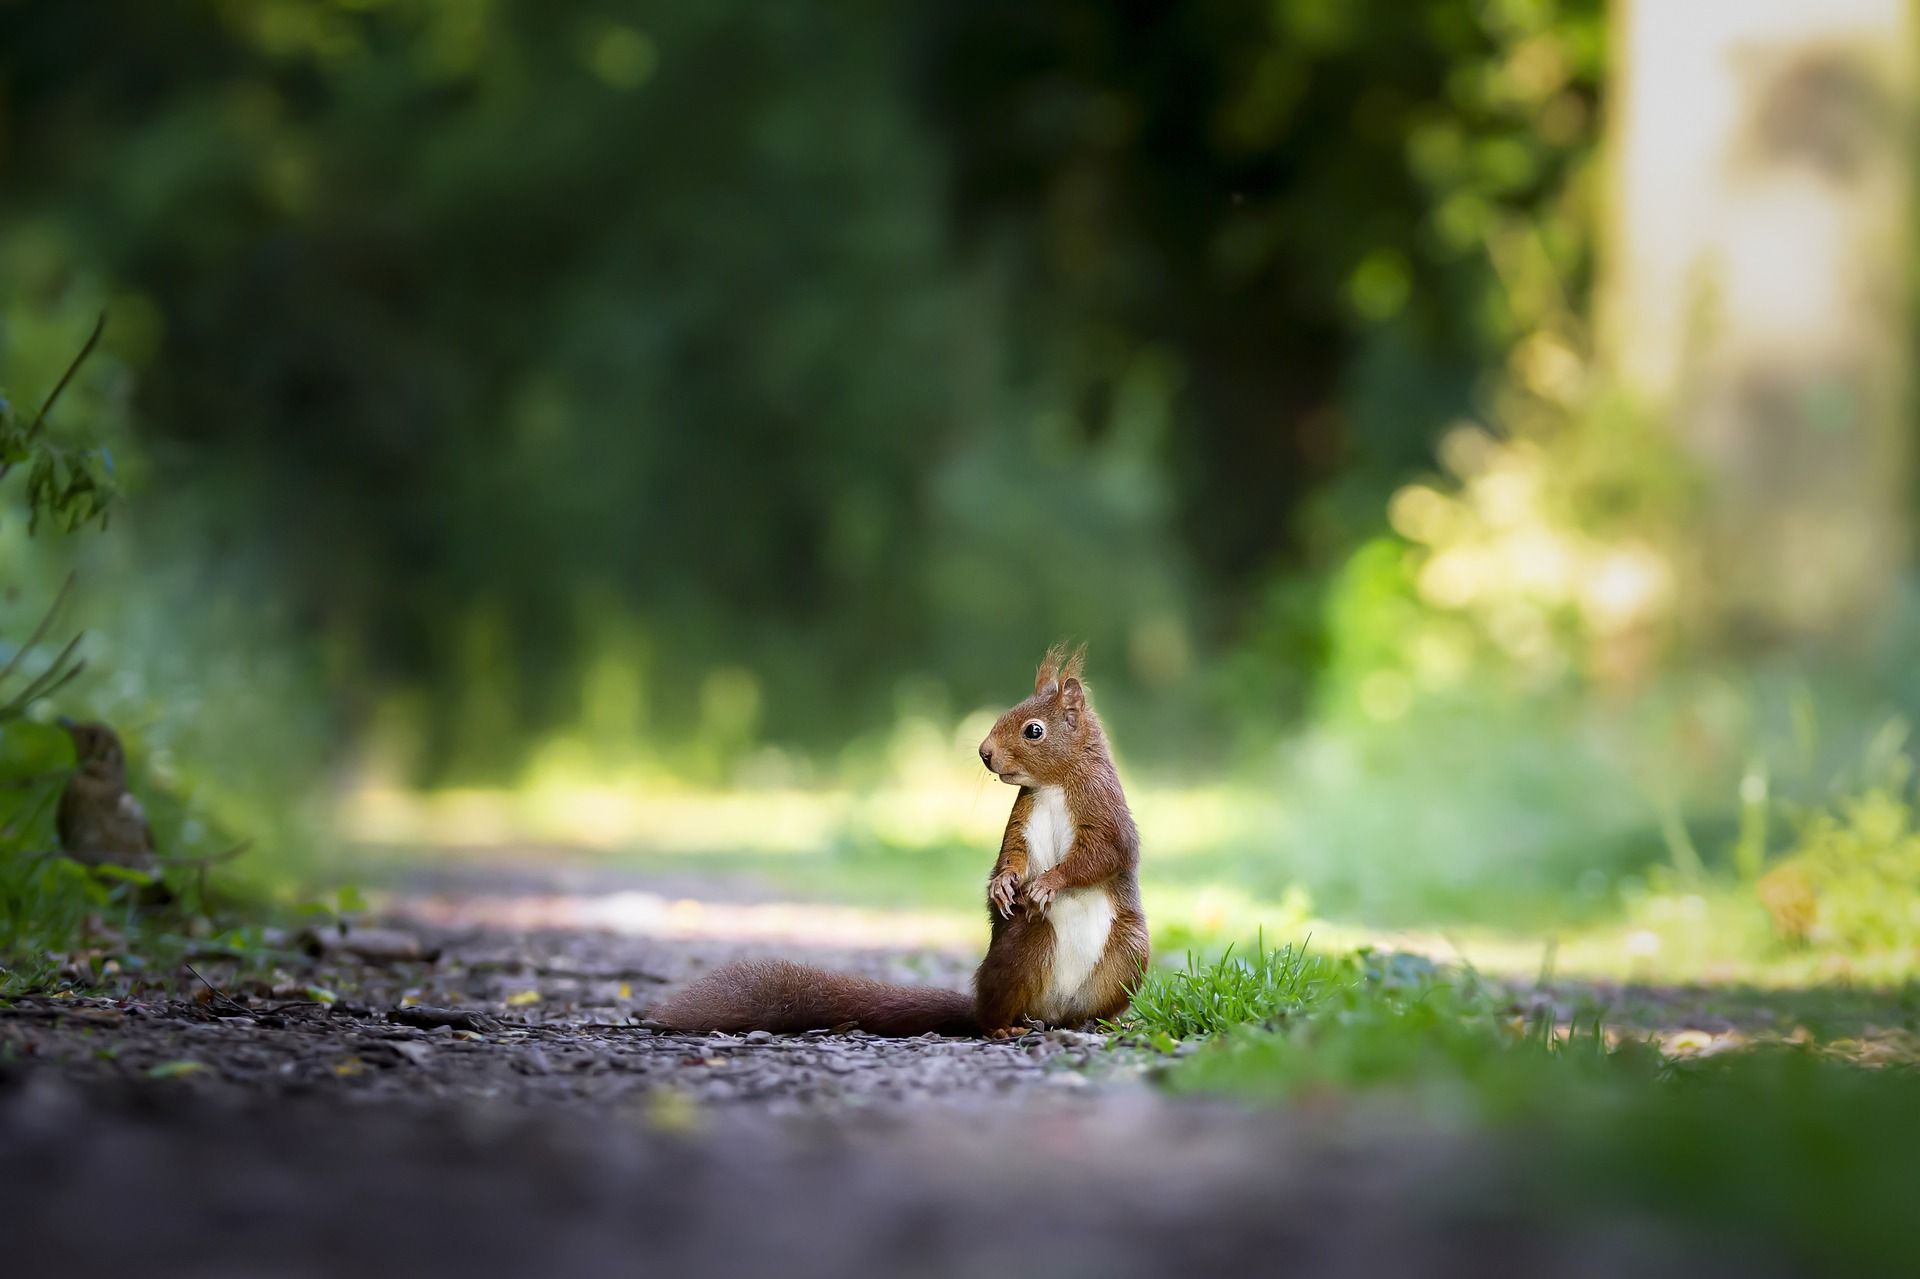 Squirrel sitting on a path